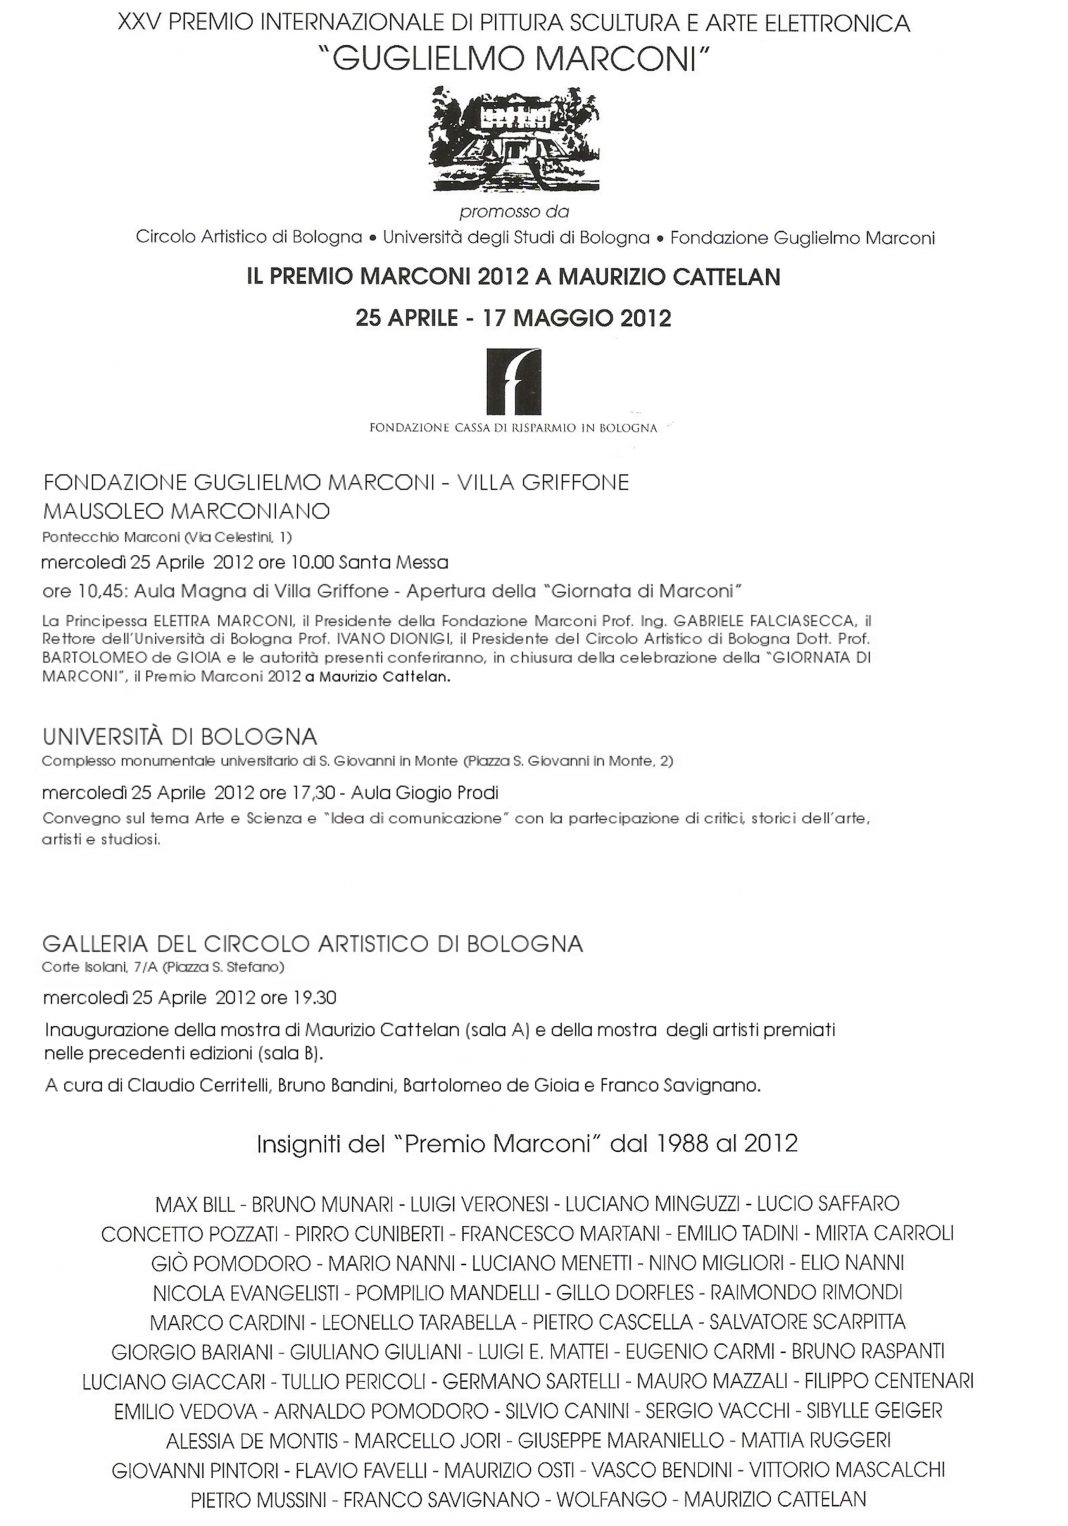 Mostra degli artisti insigniti del Premio G. Marconi dal 1988 al 2012https://www.exibart.com/repository/media/eventi/2012/04/mostra-degli-artisti-insigniti-del-premio-g.-marconi-dal-1988-al-2012-1068x1526.jpg